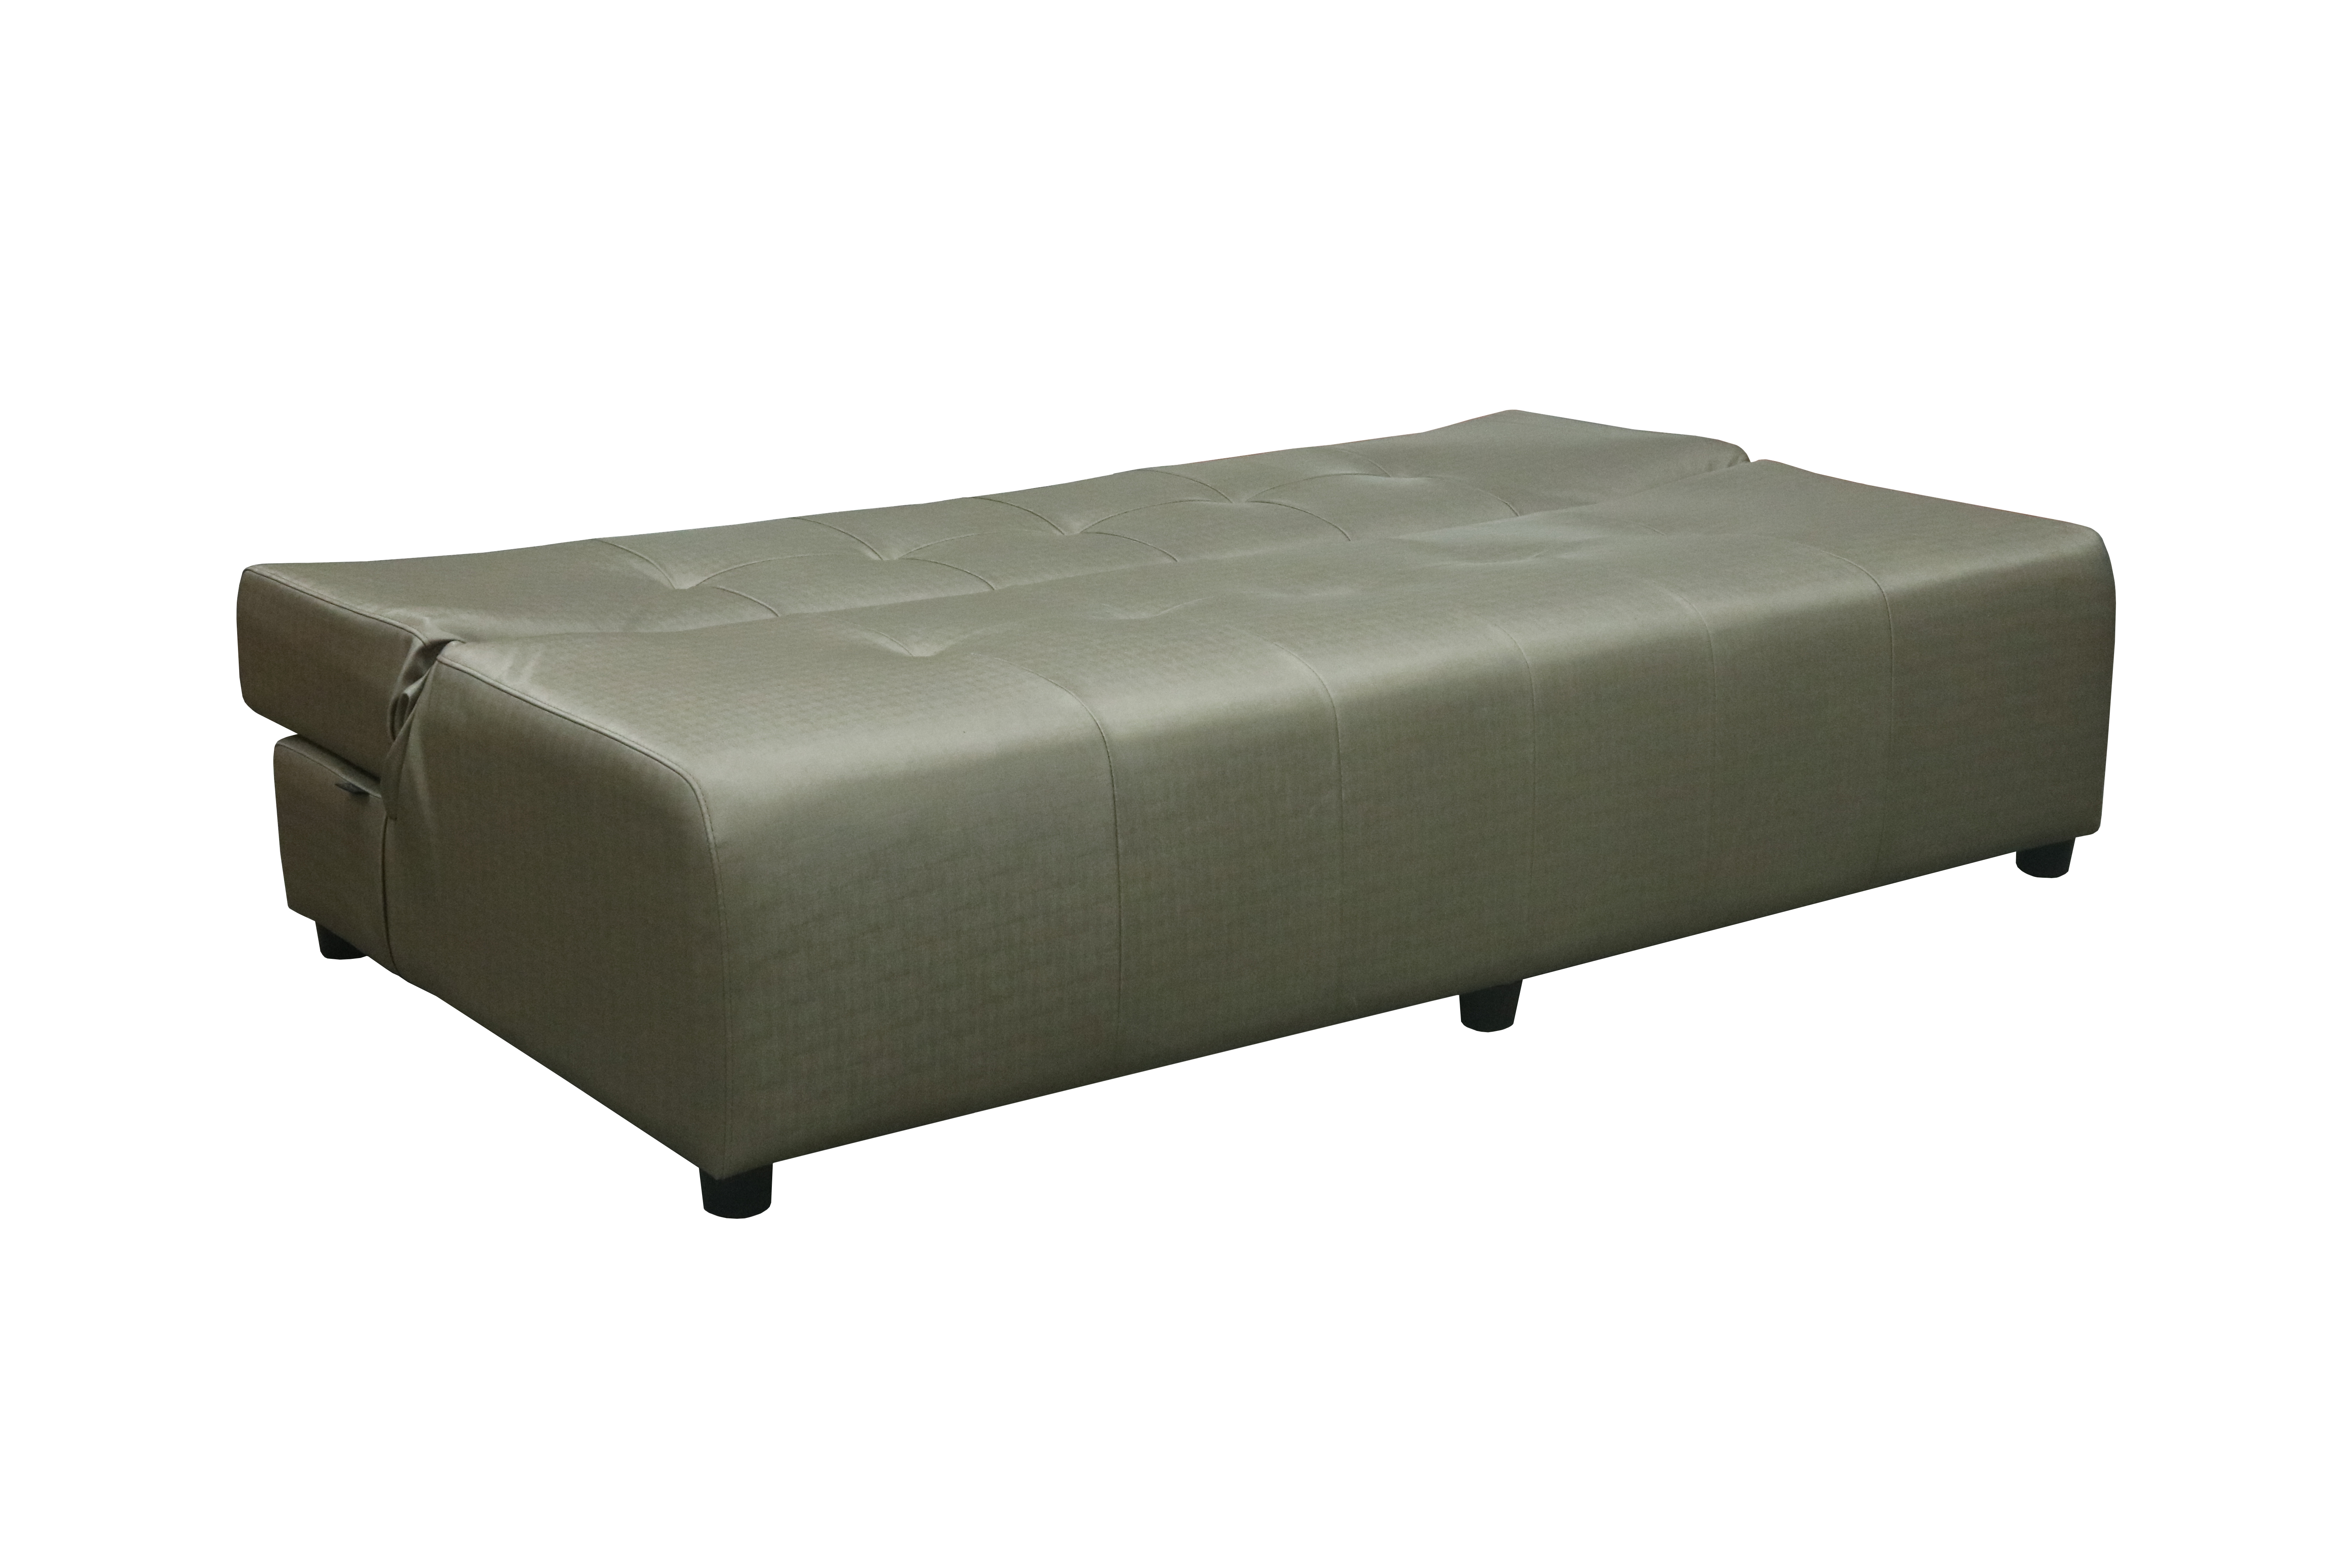 79028::MATTY::An Itoki modern sofa with cotton/PVC leather seat. Dimension (WxDxH) cm : 160/180/190x105x80 ITOKI SOFA BED